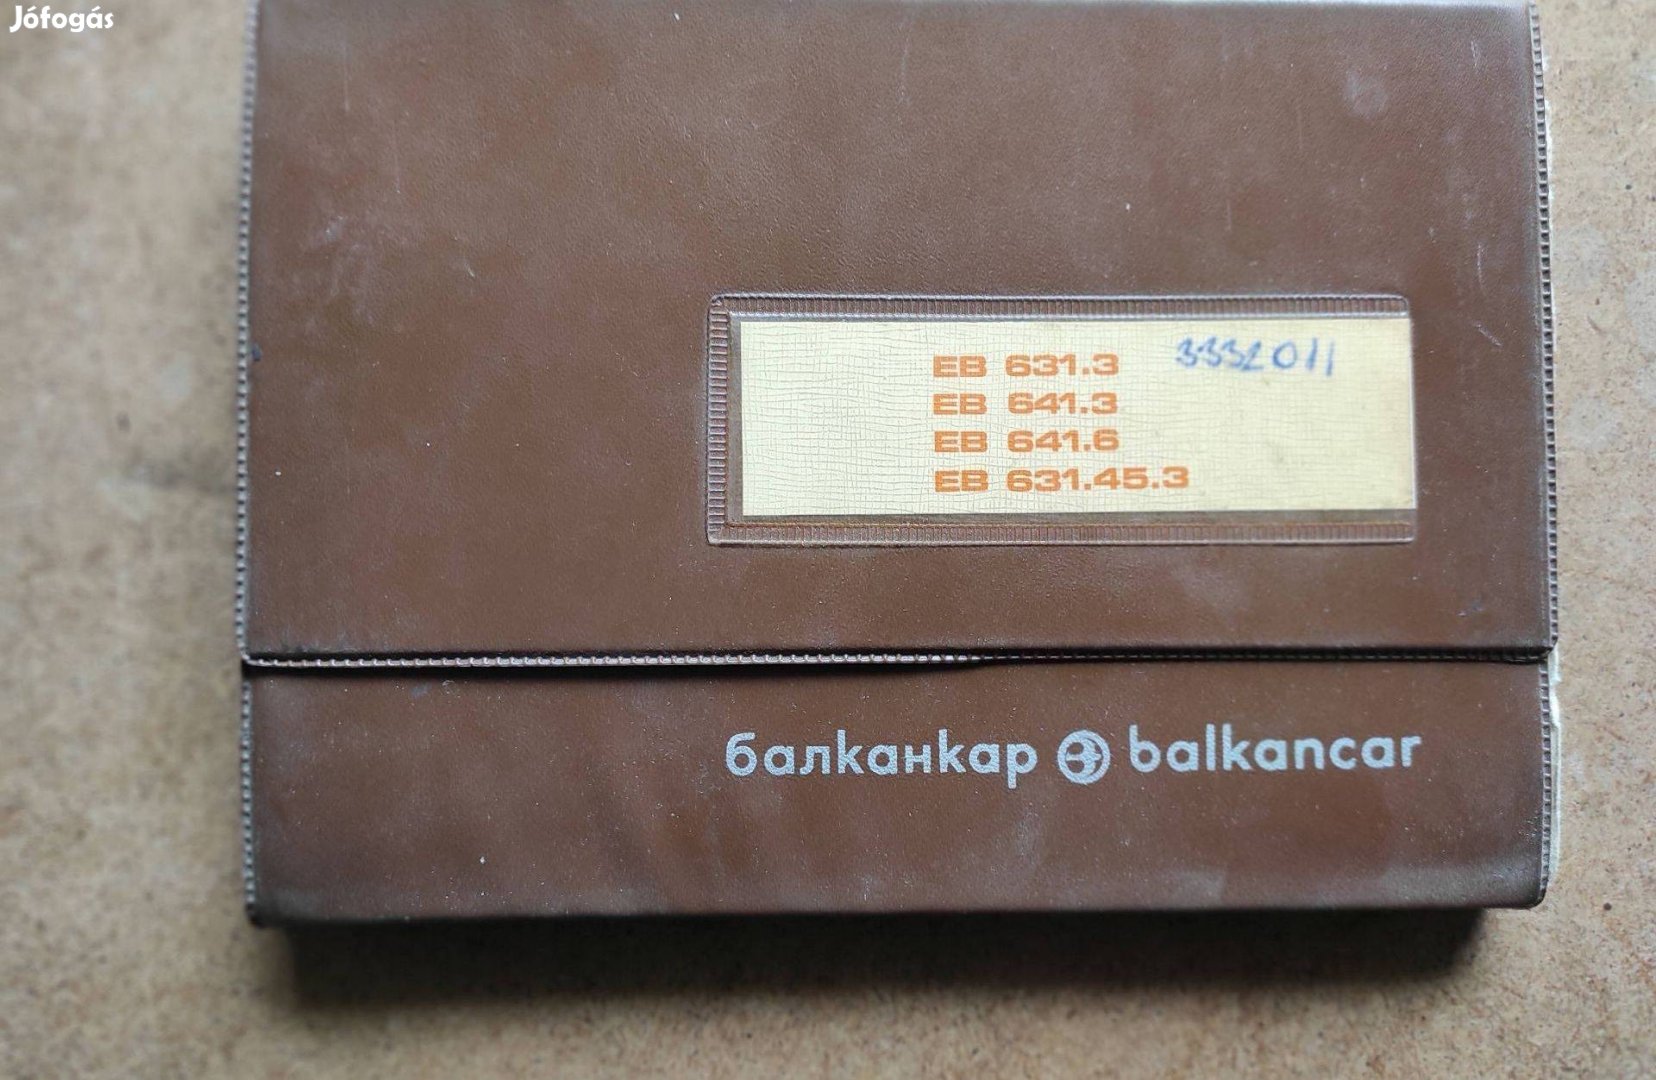 Balkancar targonca EB 631.3 alkatrészkatalógus